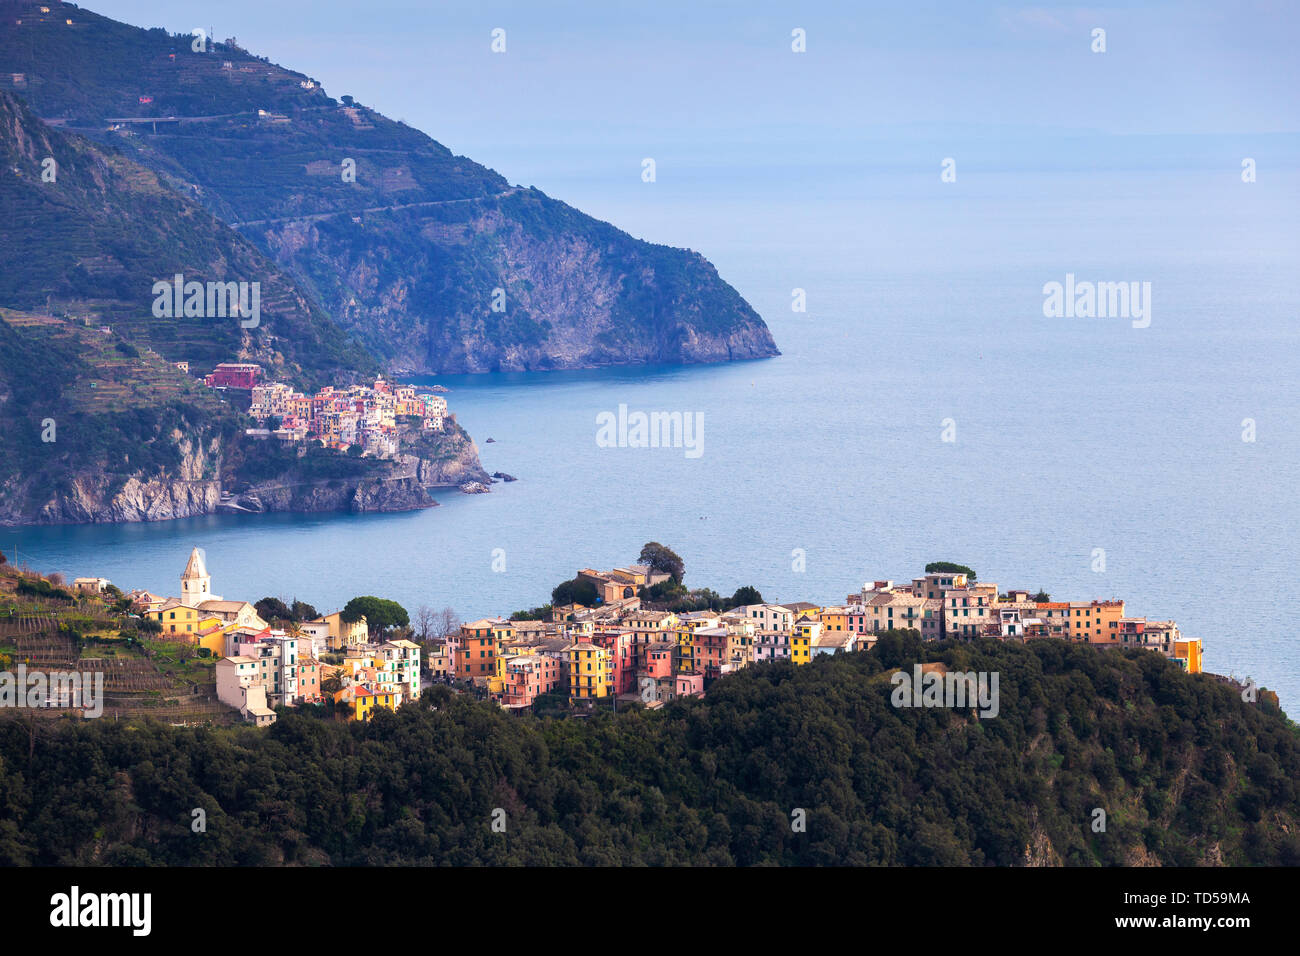 Village of Corniglia and Manarola, Cinque Terre, UNESCO World Heritage Site, Liguria, Italy, Europe Stock Photo